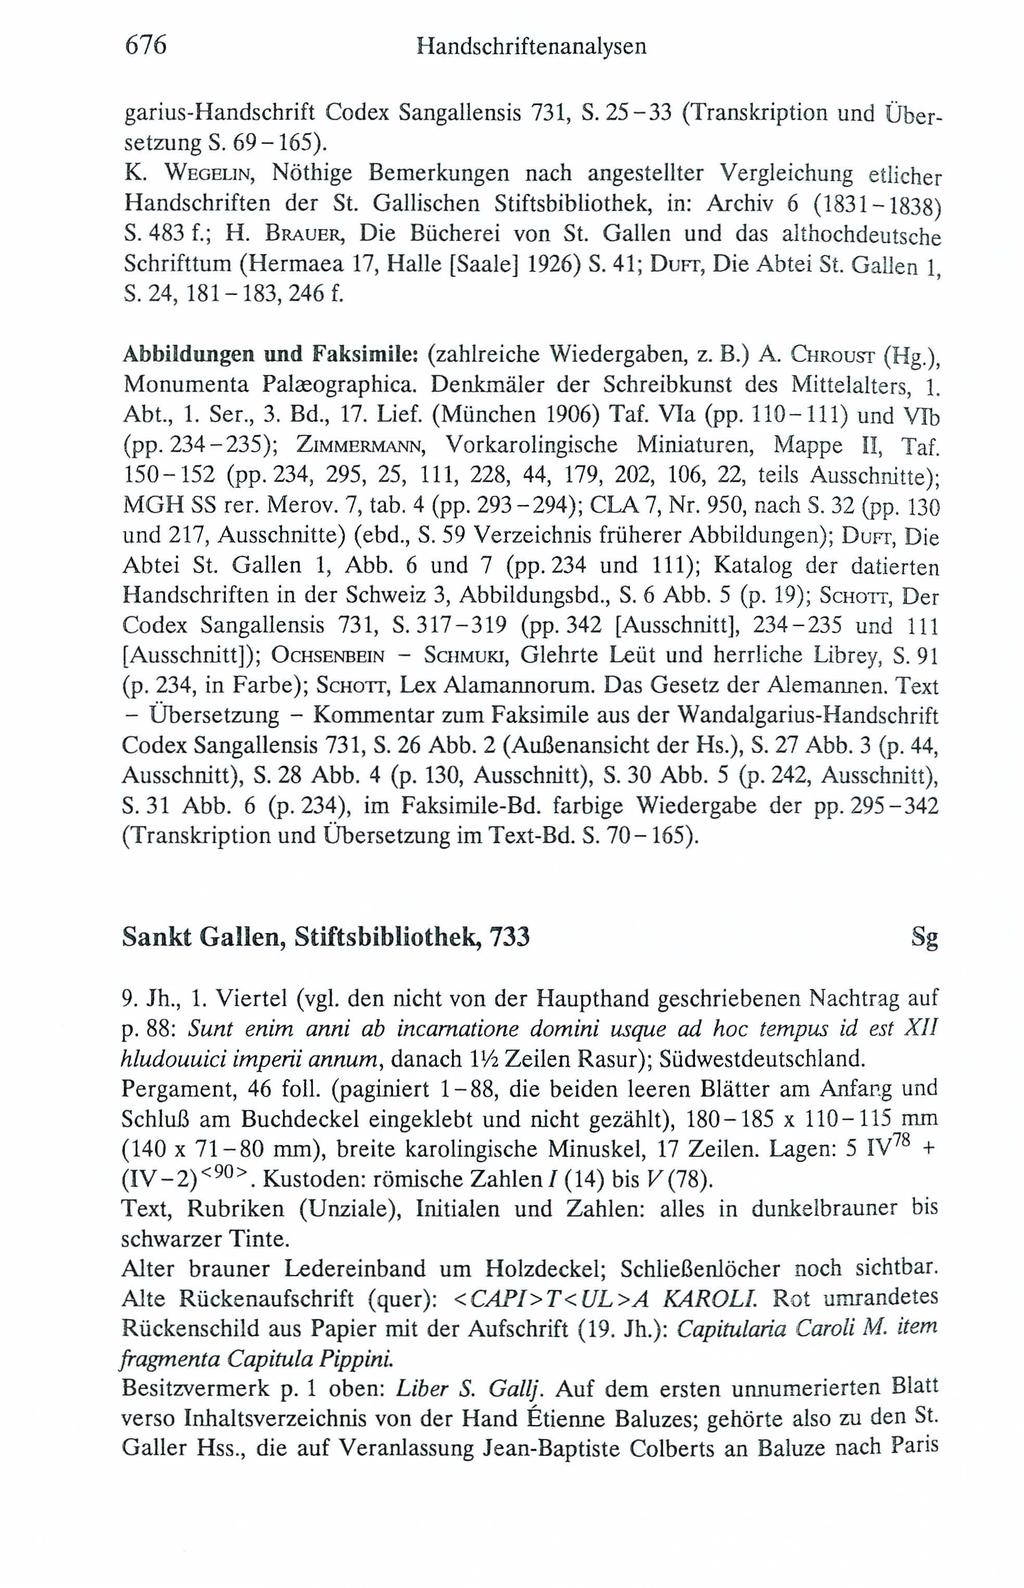 676 Handschriftenanalysen garius-handschrift Codex Sangallensis 731, S. 25-33 (Transkription und Übersetzung S. 69-165). K.